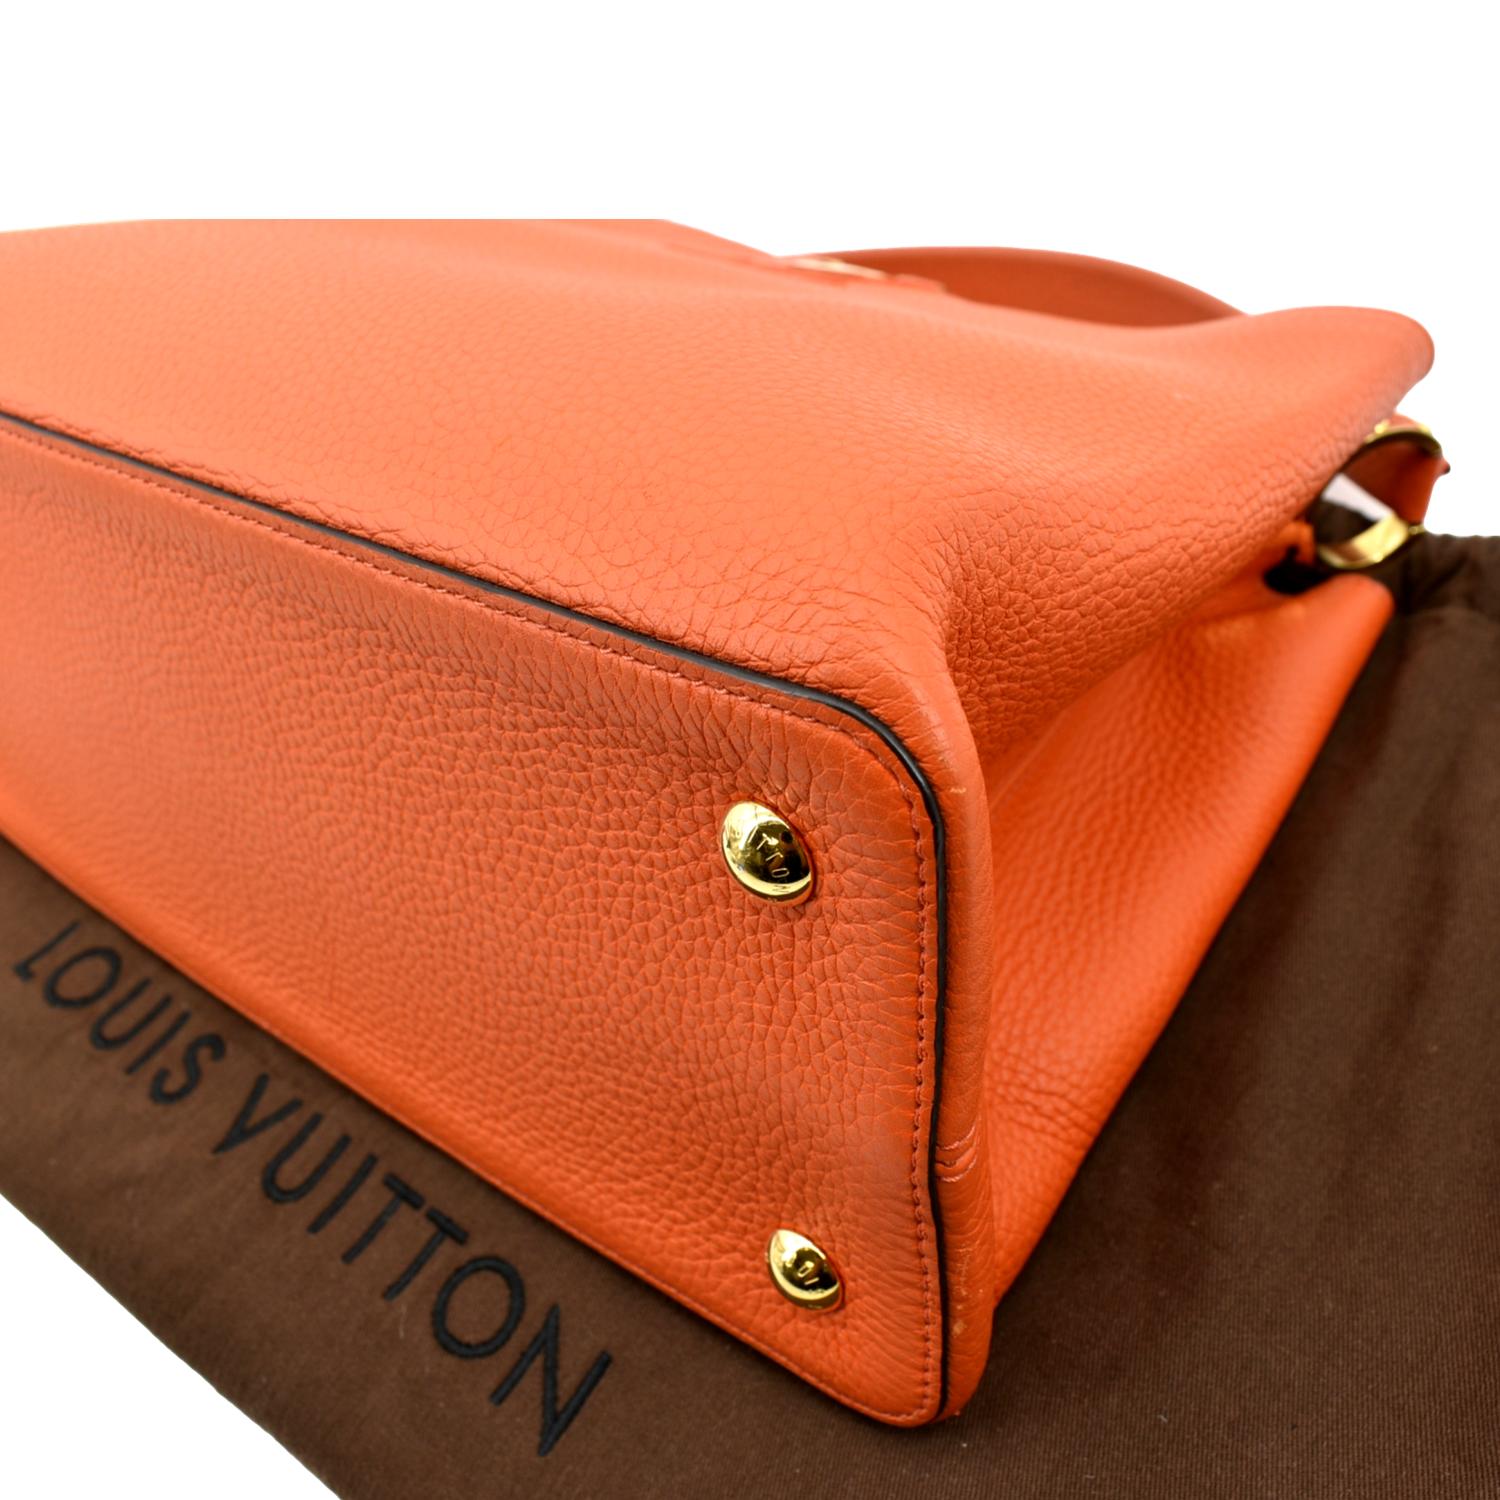 LOUIS VUITTON Capucines MM Taurillon Leather Satchel Bag Orange